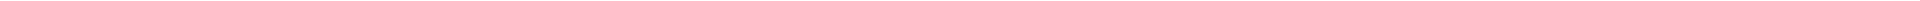 Виниры на зубы – цены в Казахстане Алматы, Астане (Нур-Султан), Усть-Каменогорске, Атырау, Уральск, Кокшетау в Казахстане, фото 20